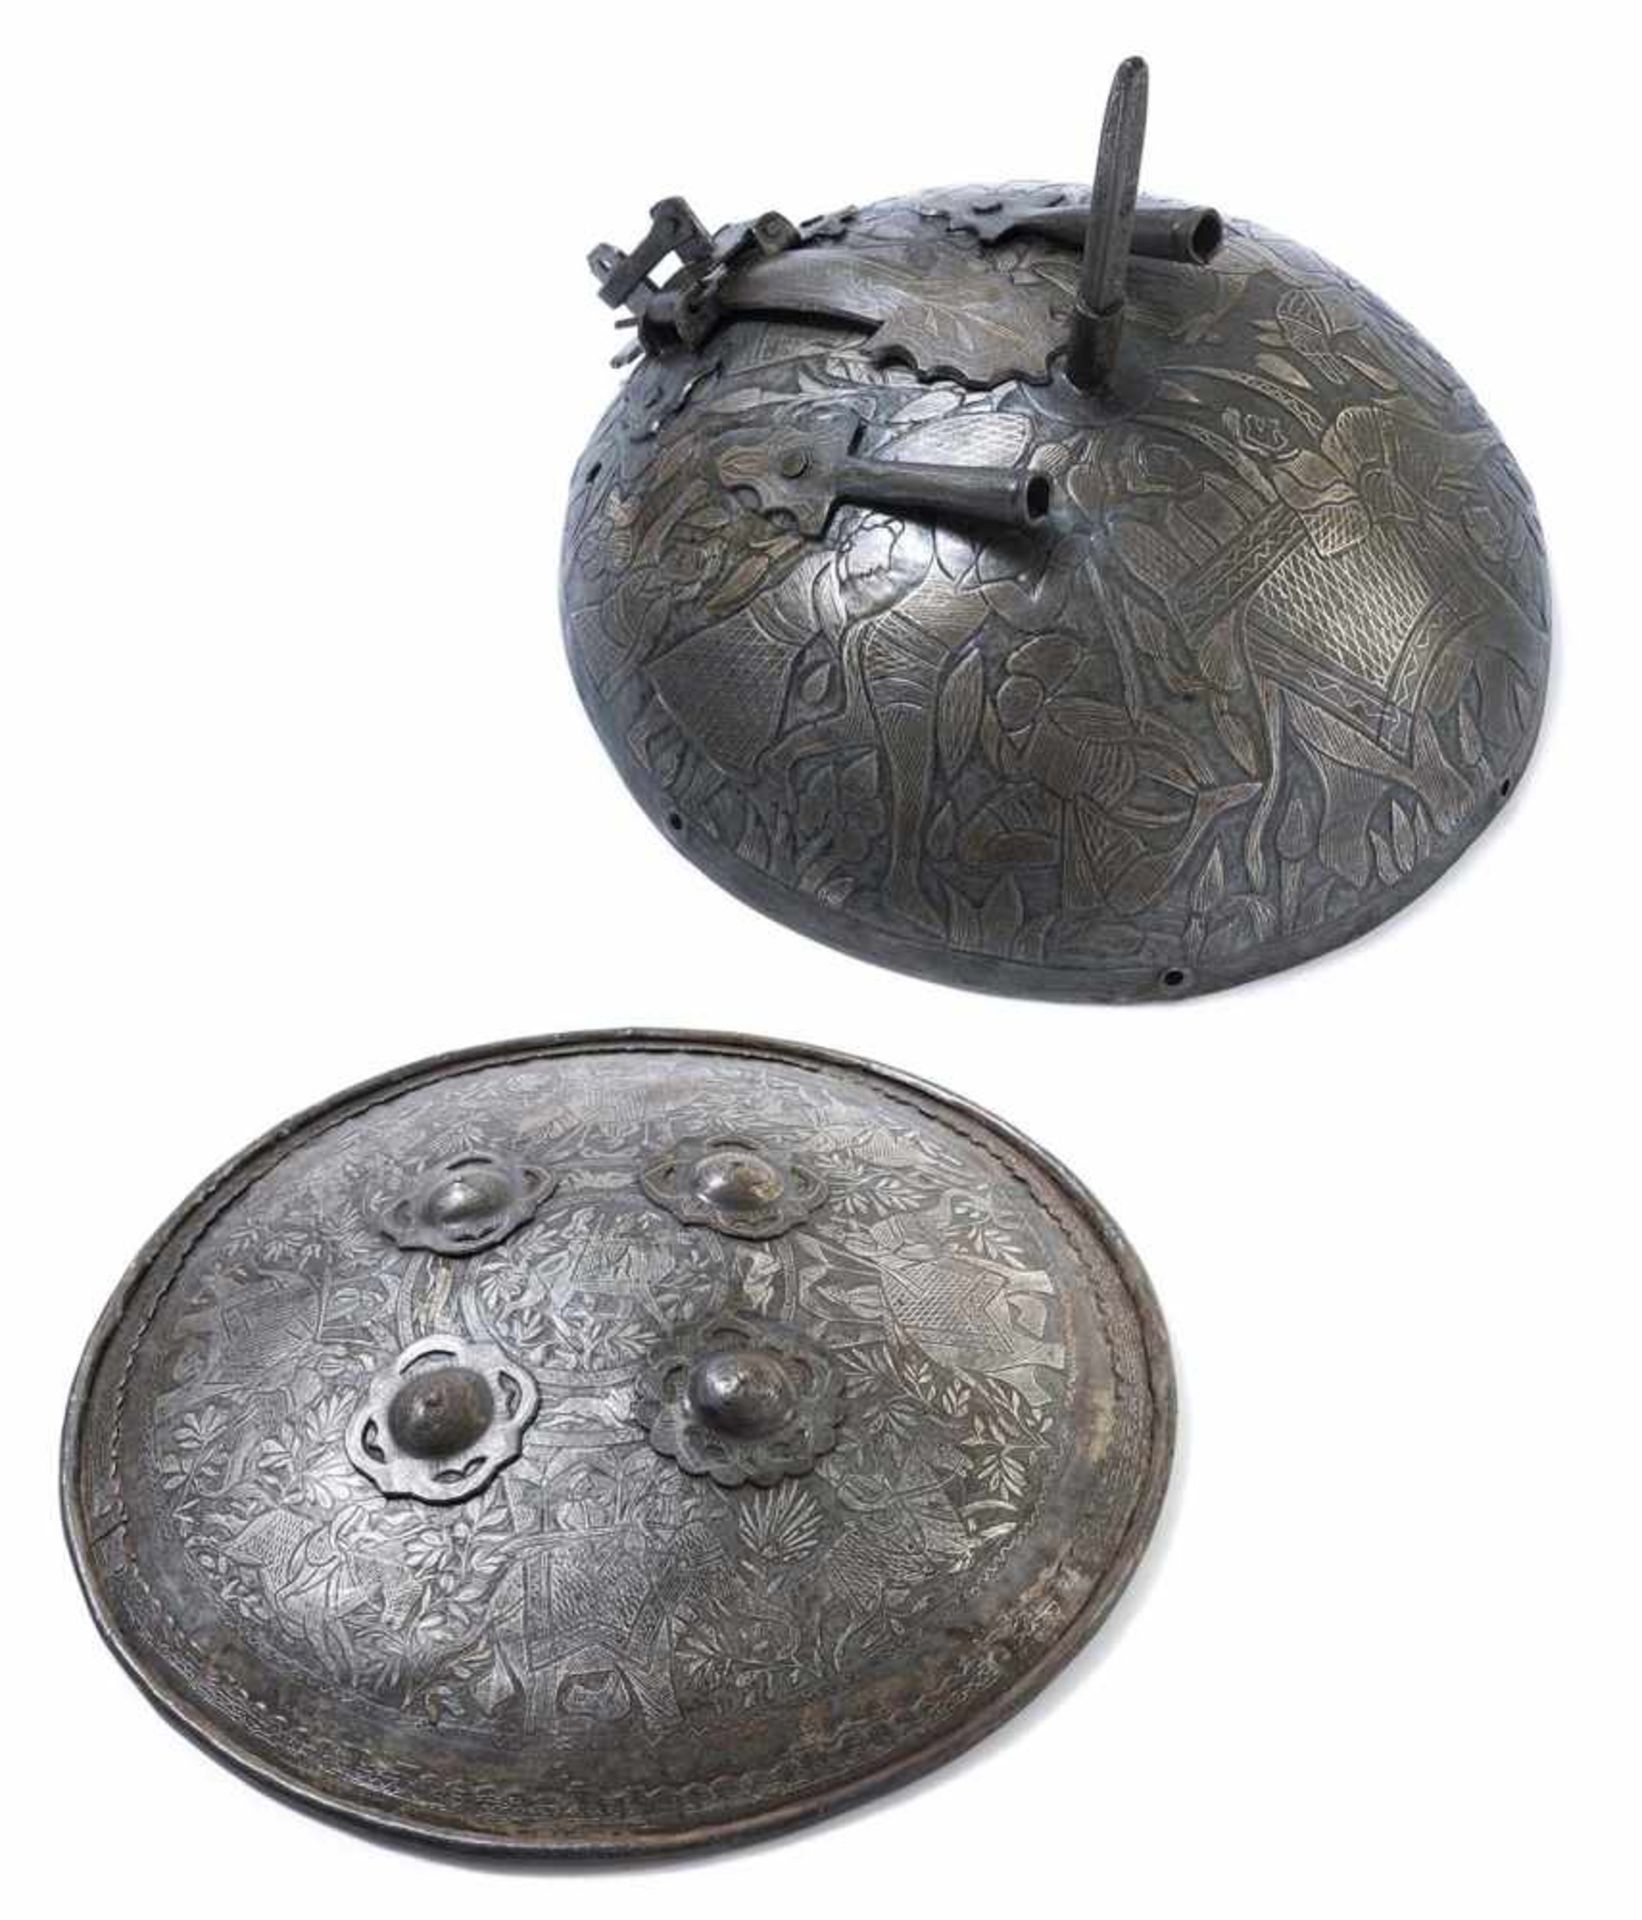 Schild "dhal" und Fragment eines Helms "Khula Kud"Indien, 19./20. Jh.D. 46/21 cmStahl, reich